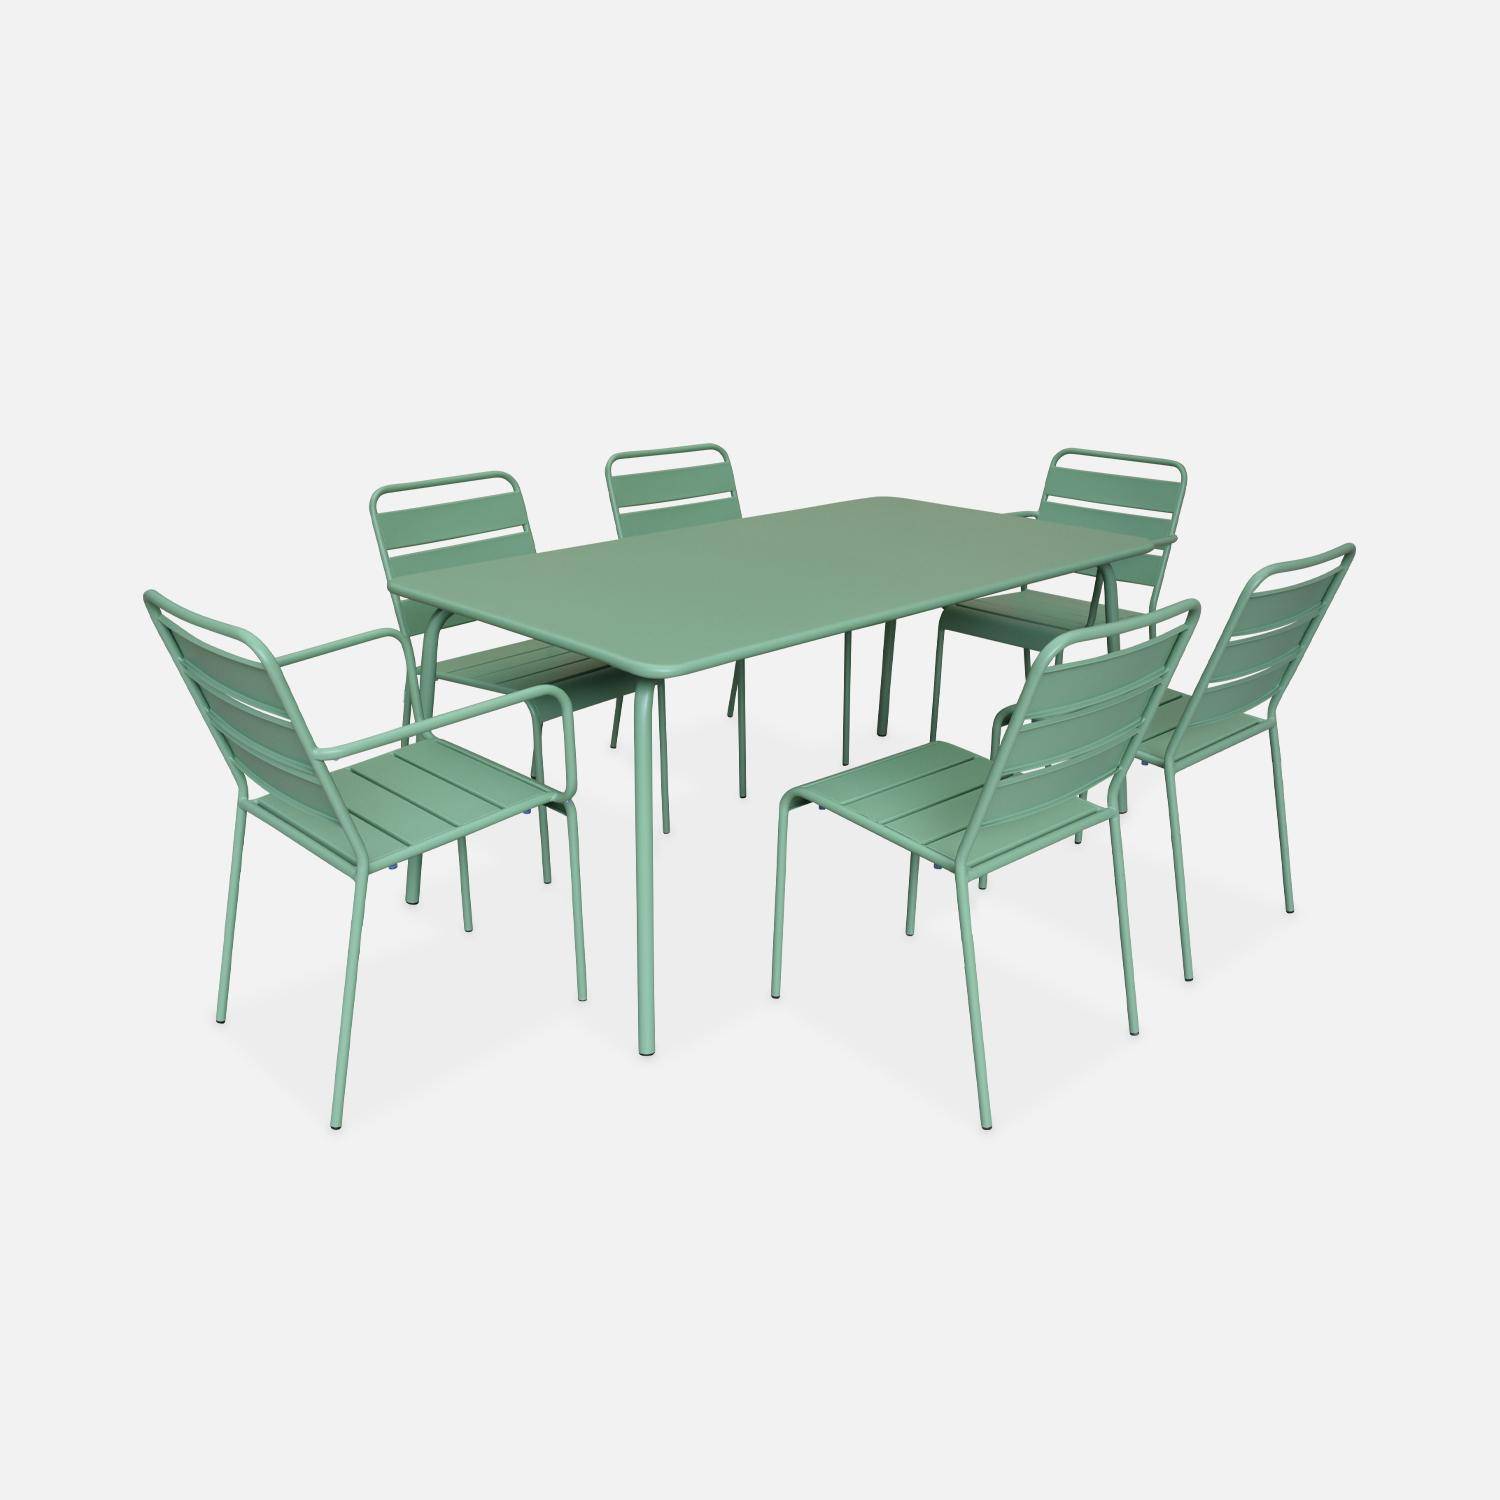 Table de jardin en métal (acier peint par électrophorèse avec protection antirouille) 160x90cm vert jade,sweeek,Photo4